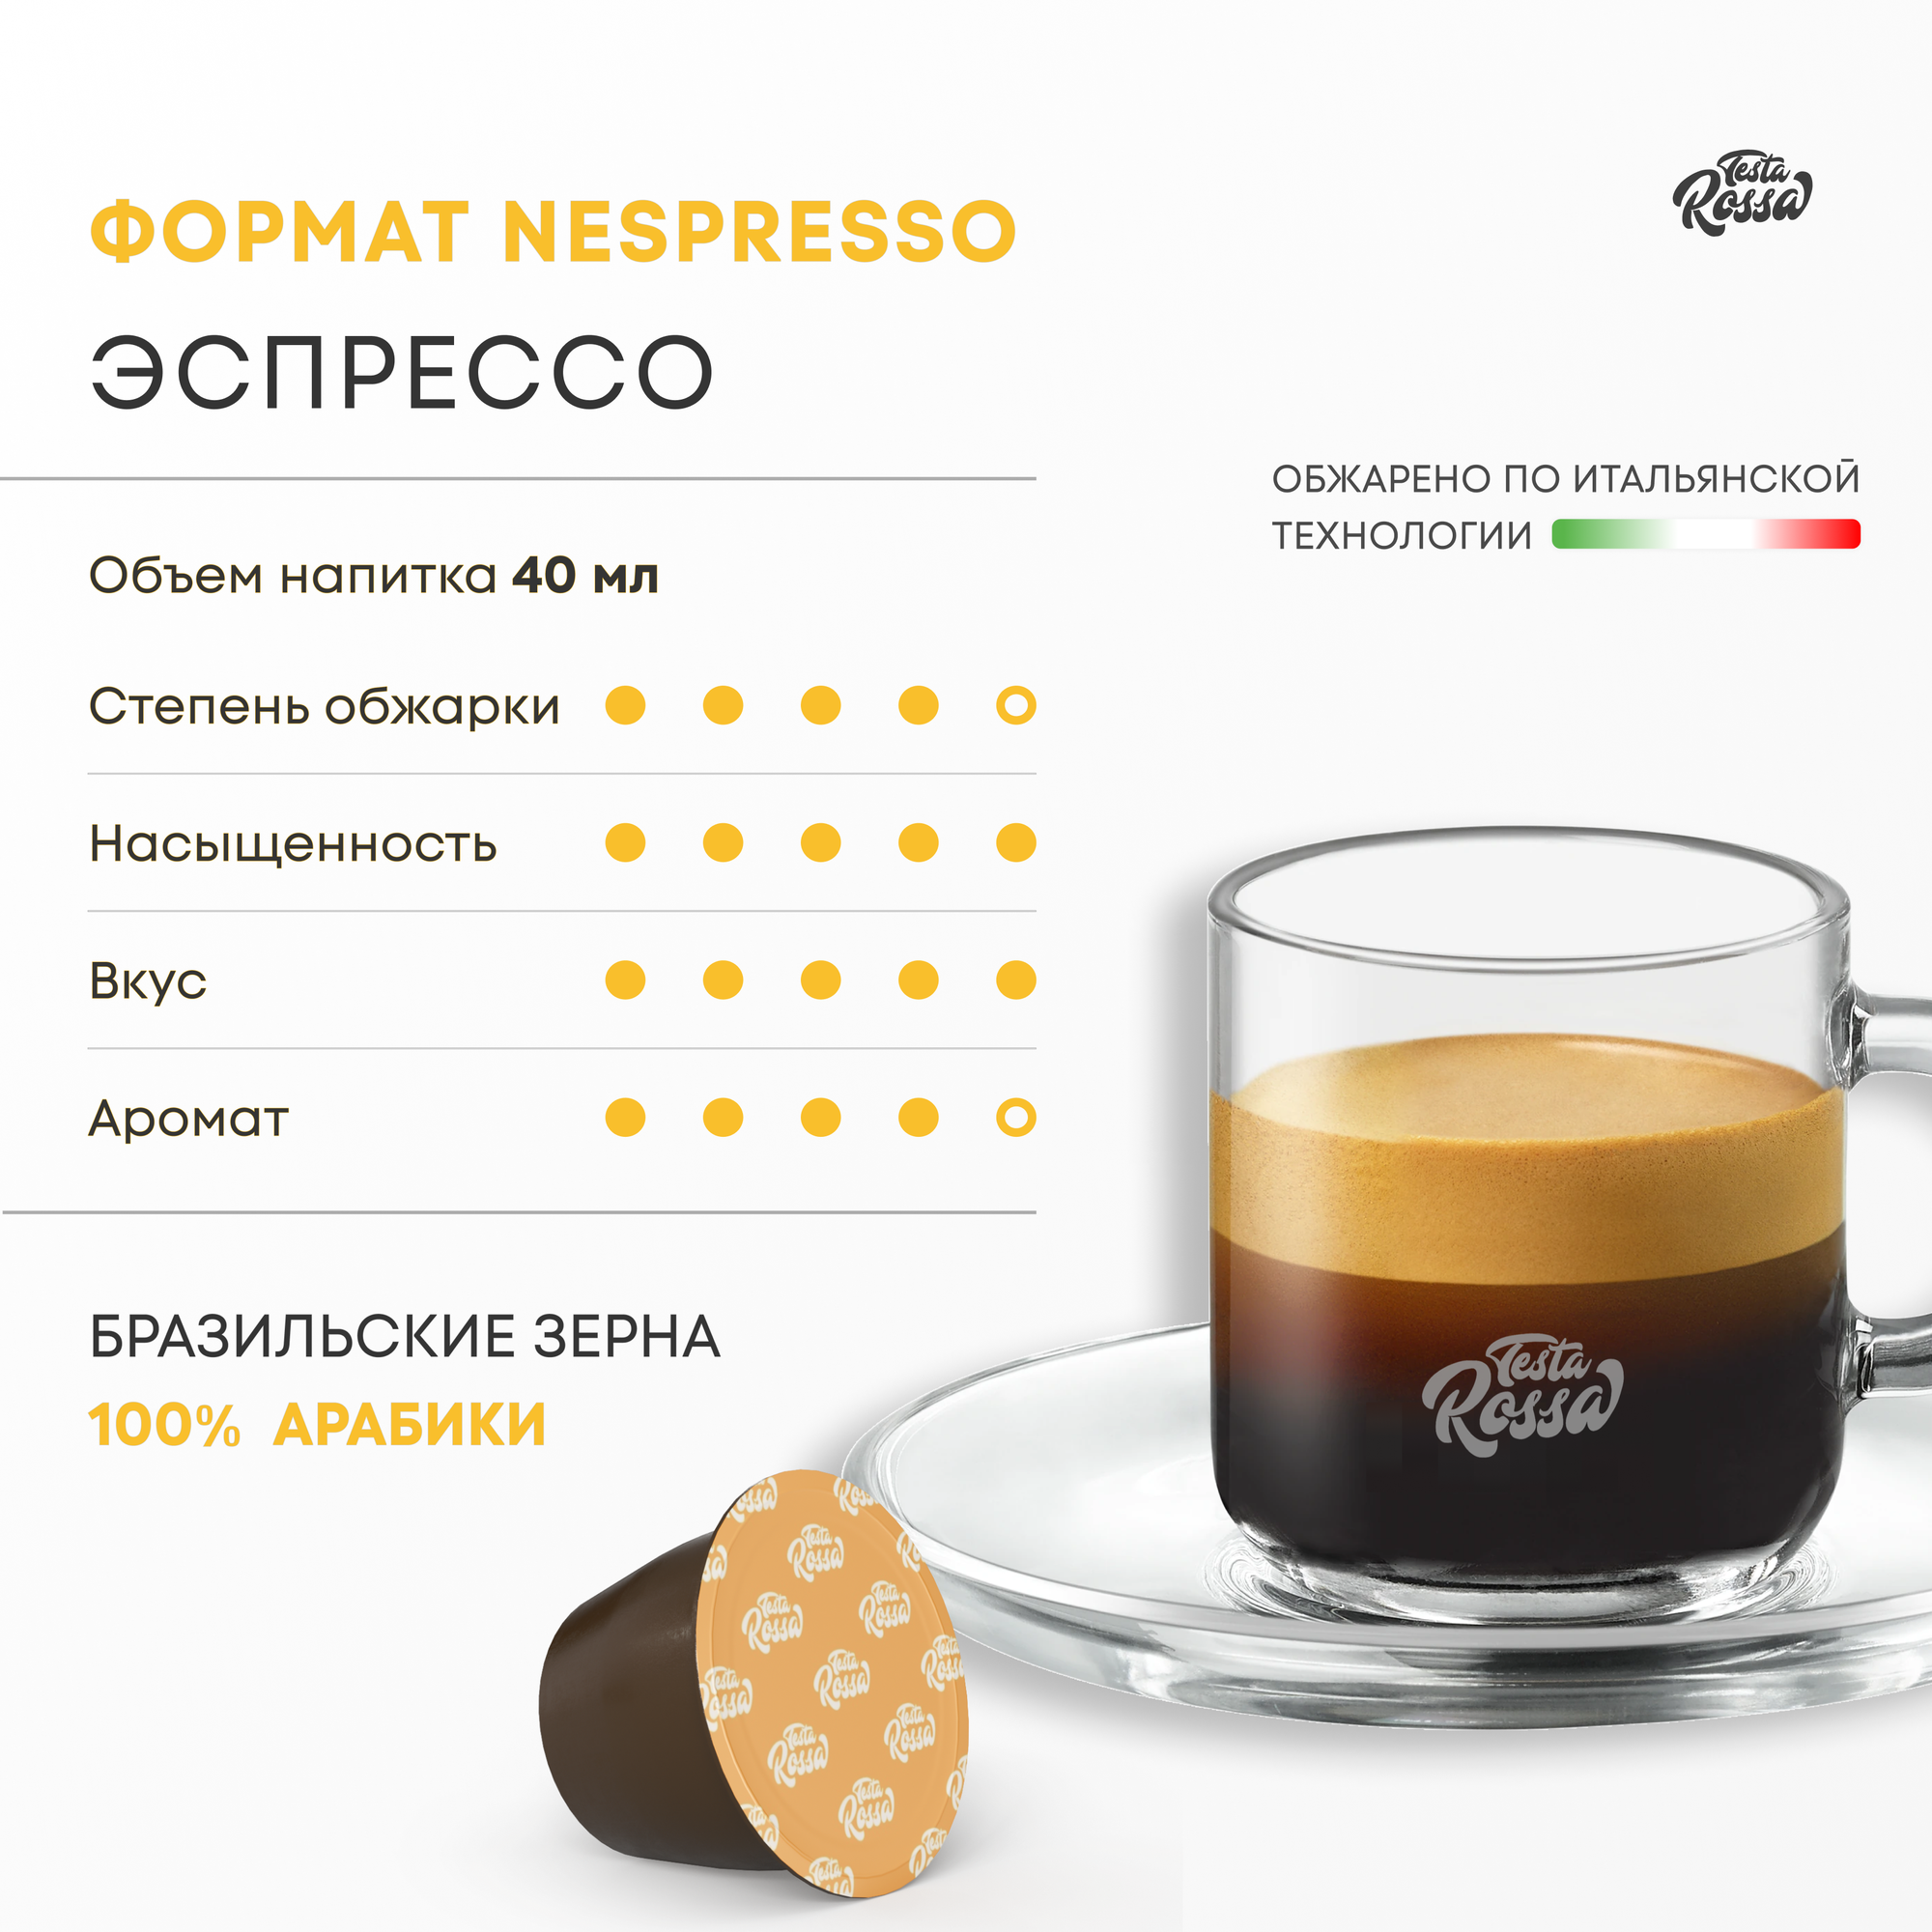 Эспрессо Арабика 100% - Капсулы Testa Rossa - 300 шт, набор кофе в капсулах неспрессо, для кофемашины NESPRESSO - фотография № 2